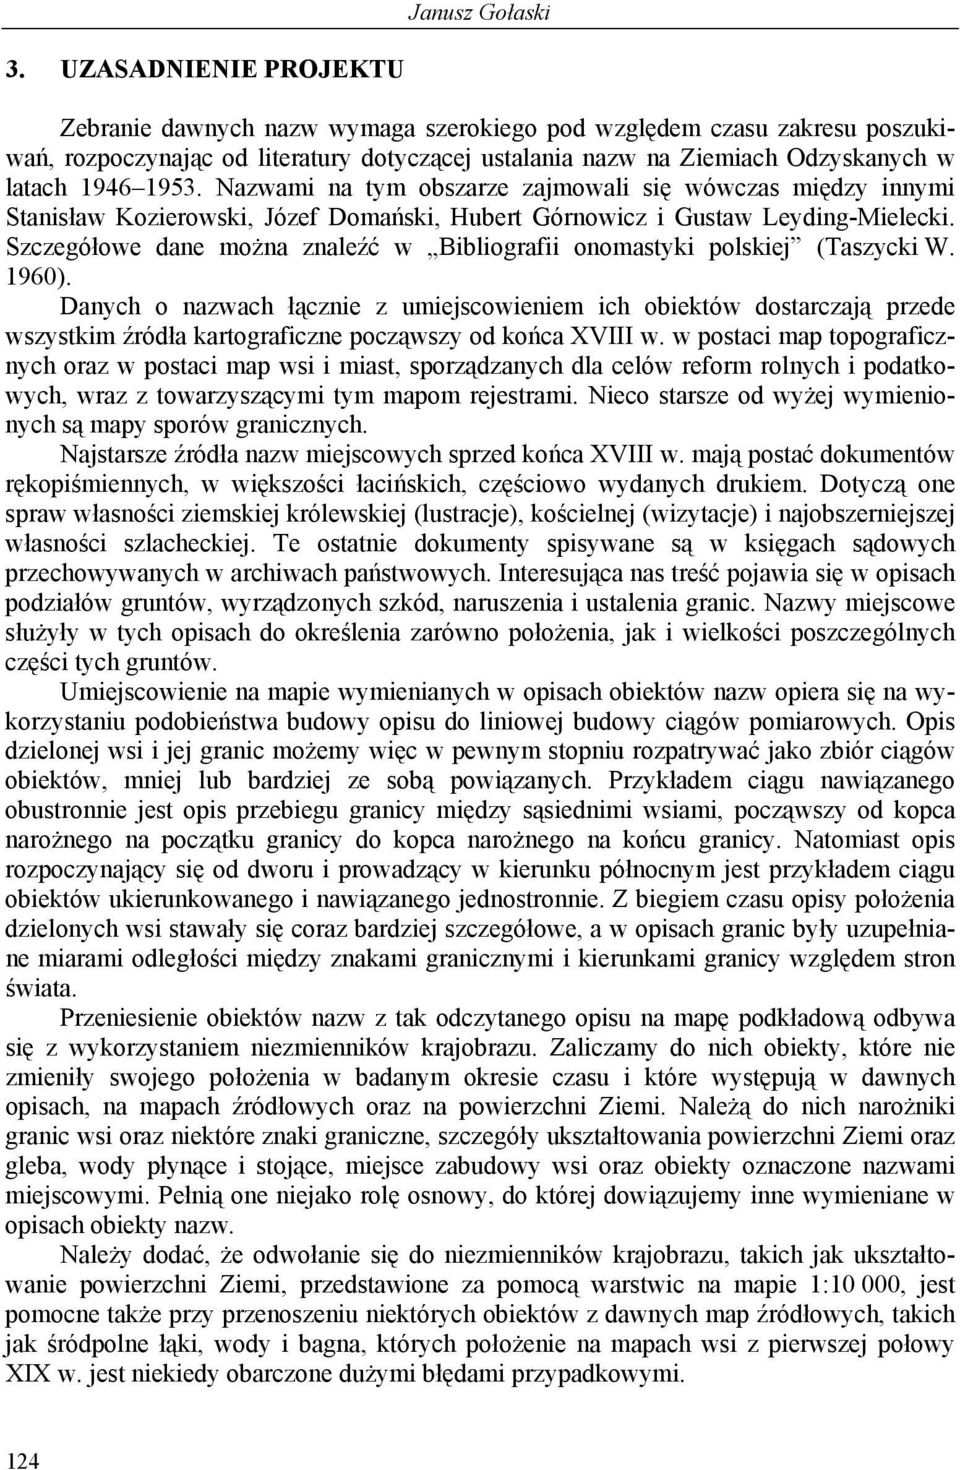 Szczegółowe dane można znaleźć w Bibliografii onomastyki polskiej (Taszycki W. 1960).